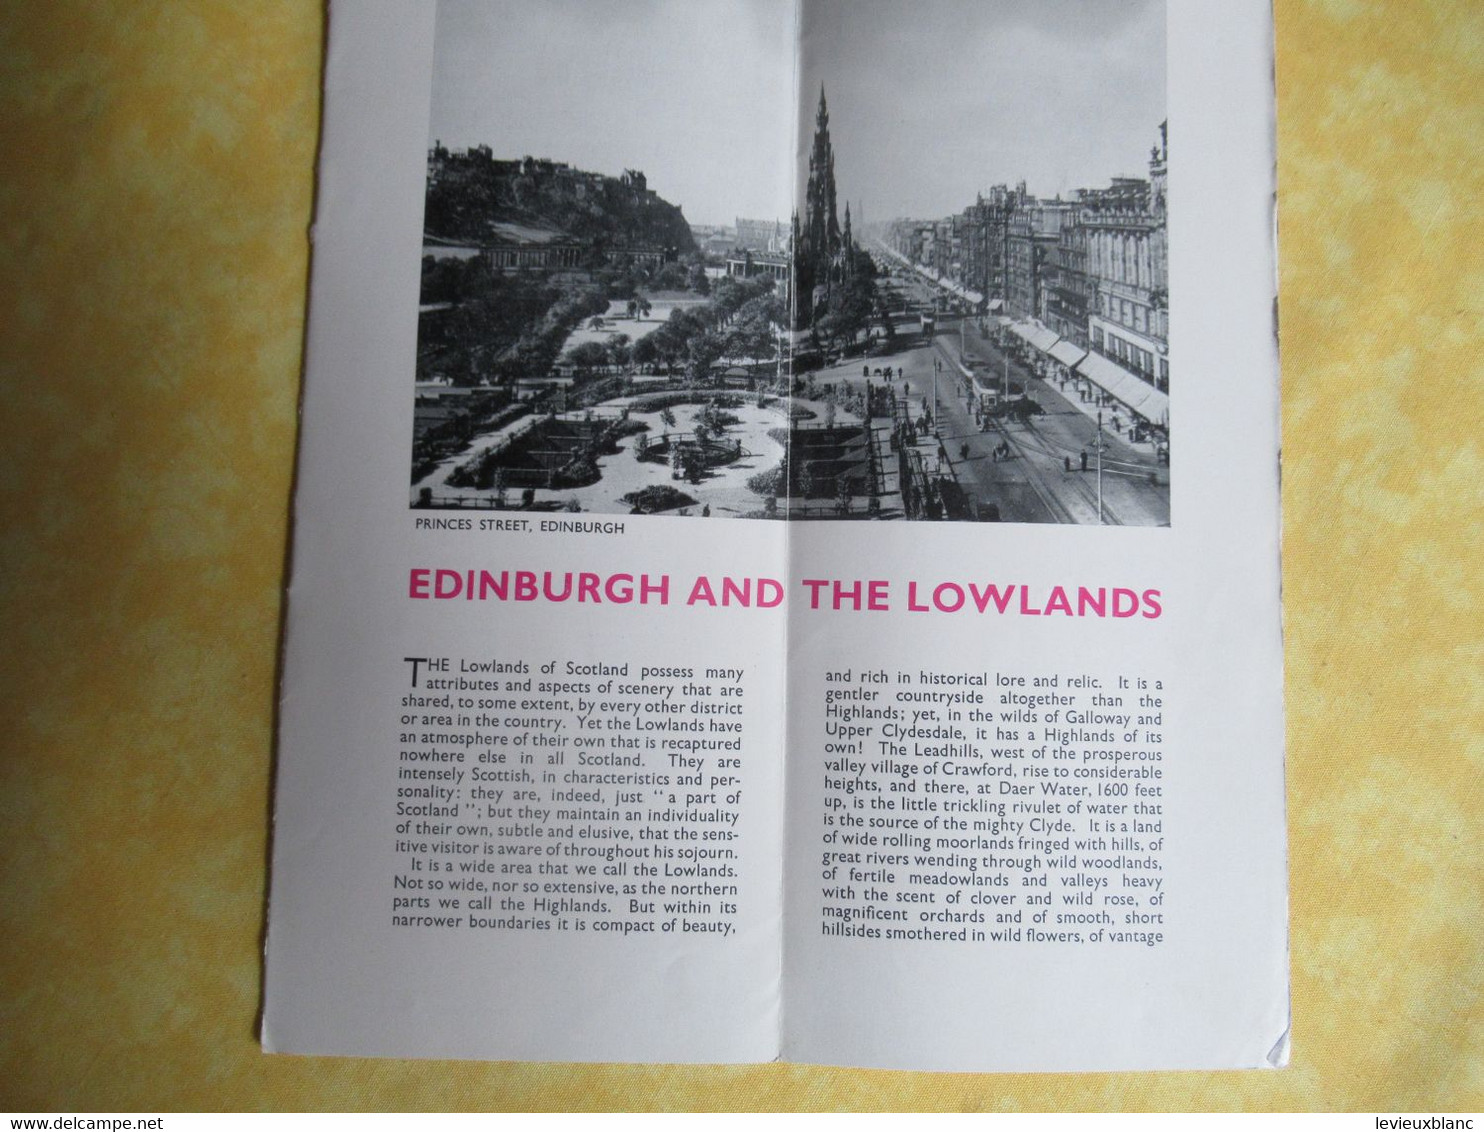 " EDINBURGH And THE LOWLANDS "/ British Railways/ Mc Corquodale & Co/ Glasgow/1950           PGC501 - Dépliants Touristiques